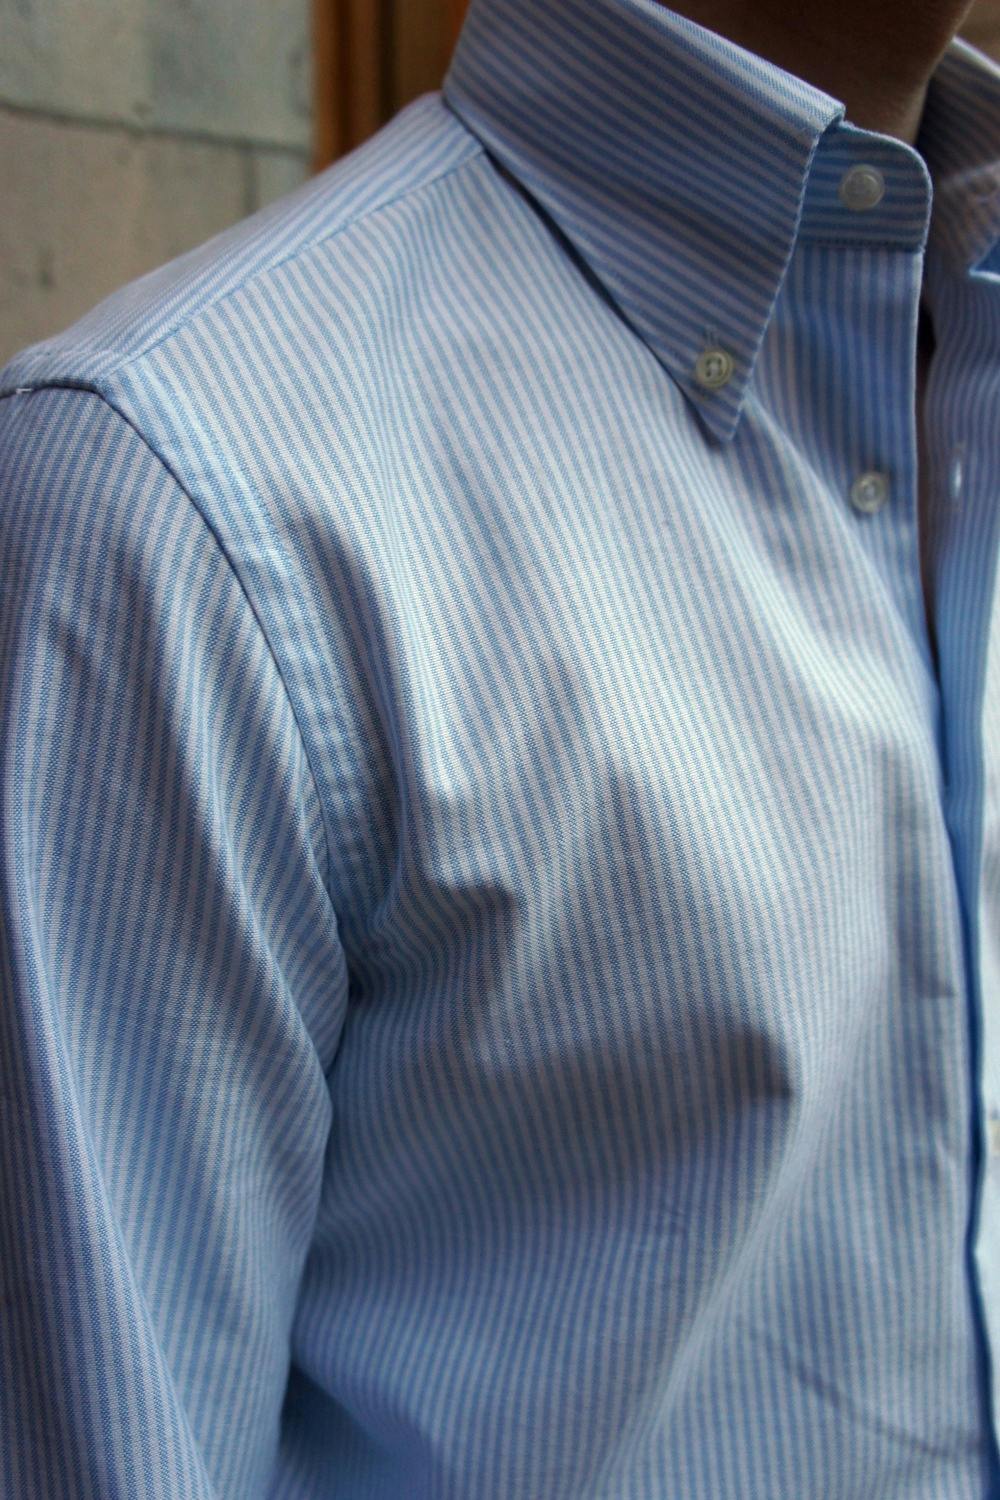 University Stripe Oxford Button Down Shirt - Light Blue/White